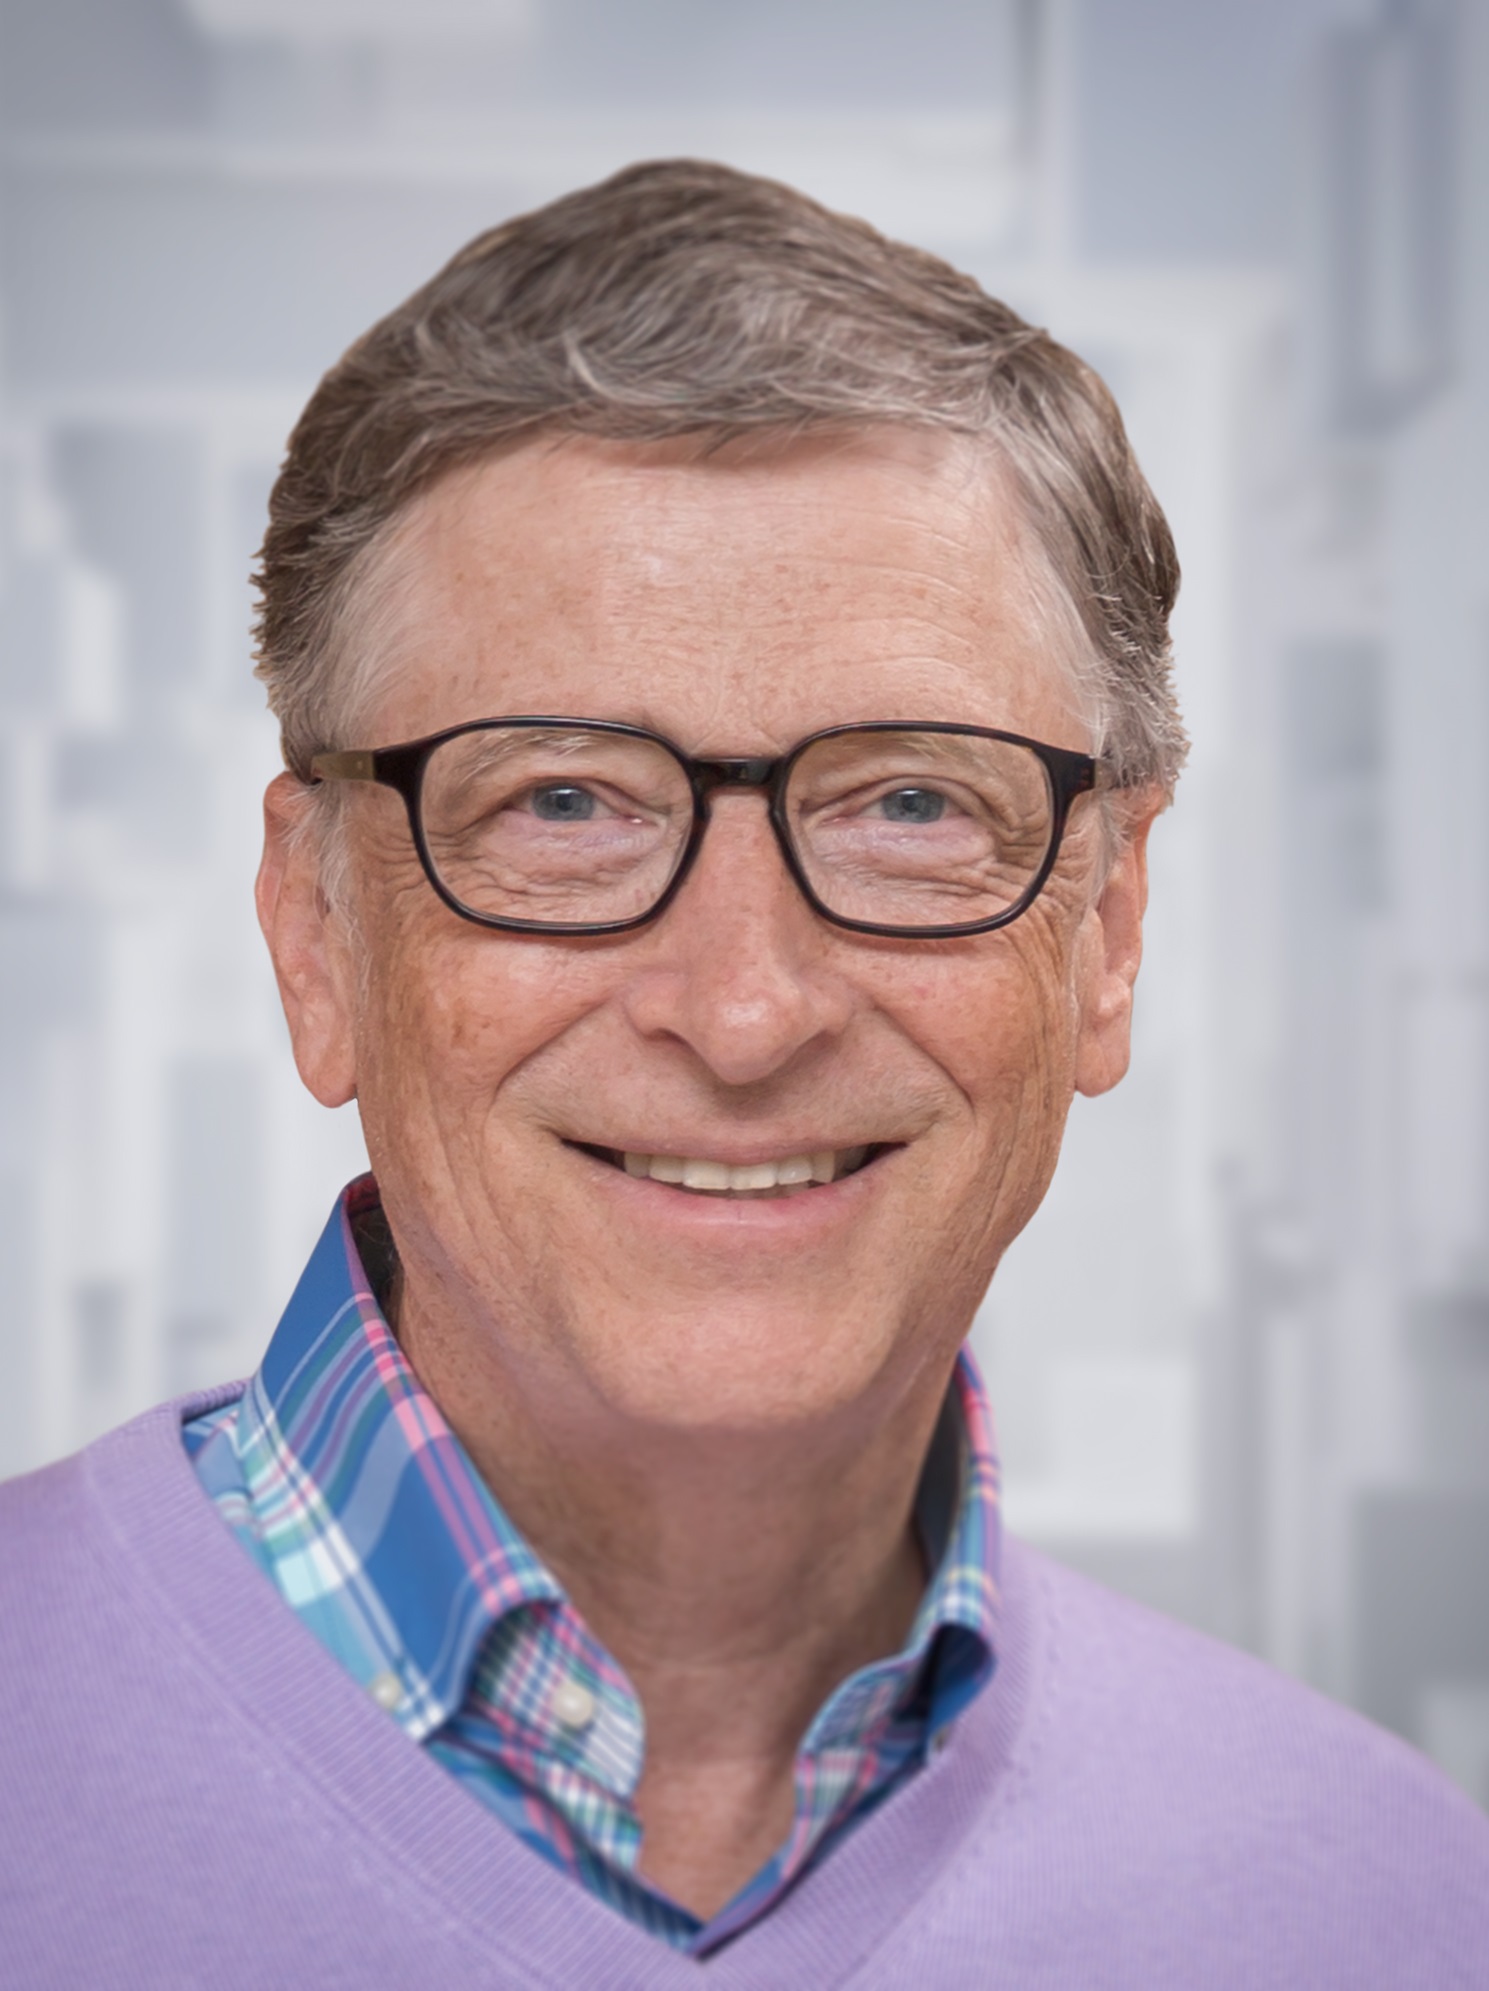 Bill Gates tritt aus Microsoft-Verwaltungsrat zurück